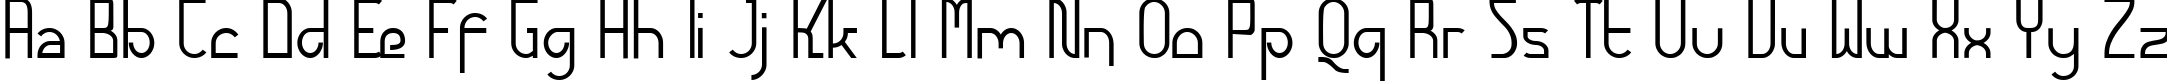 Пример написания английского алфавита шрифтом Futurex - AlternateTC